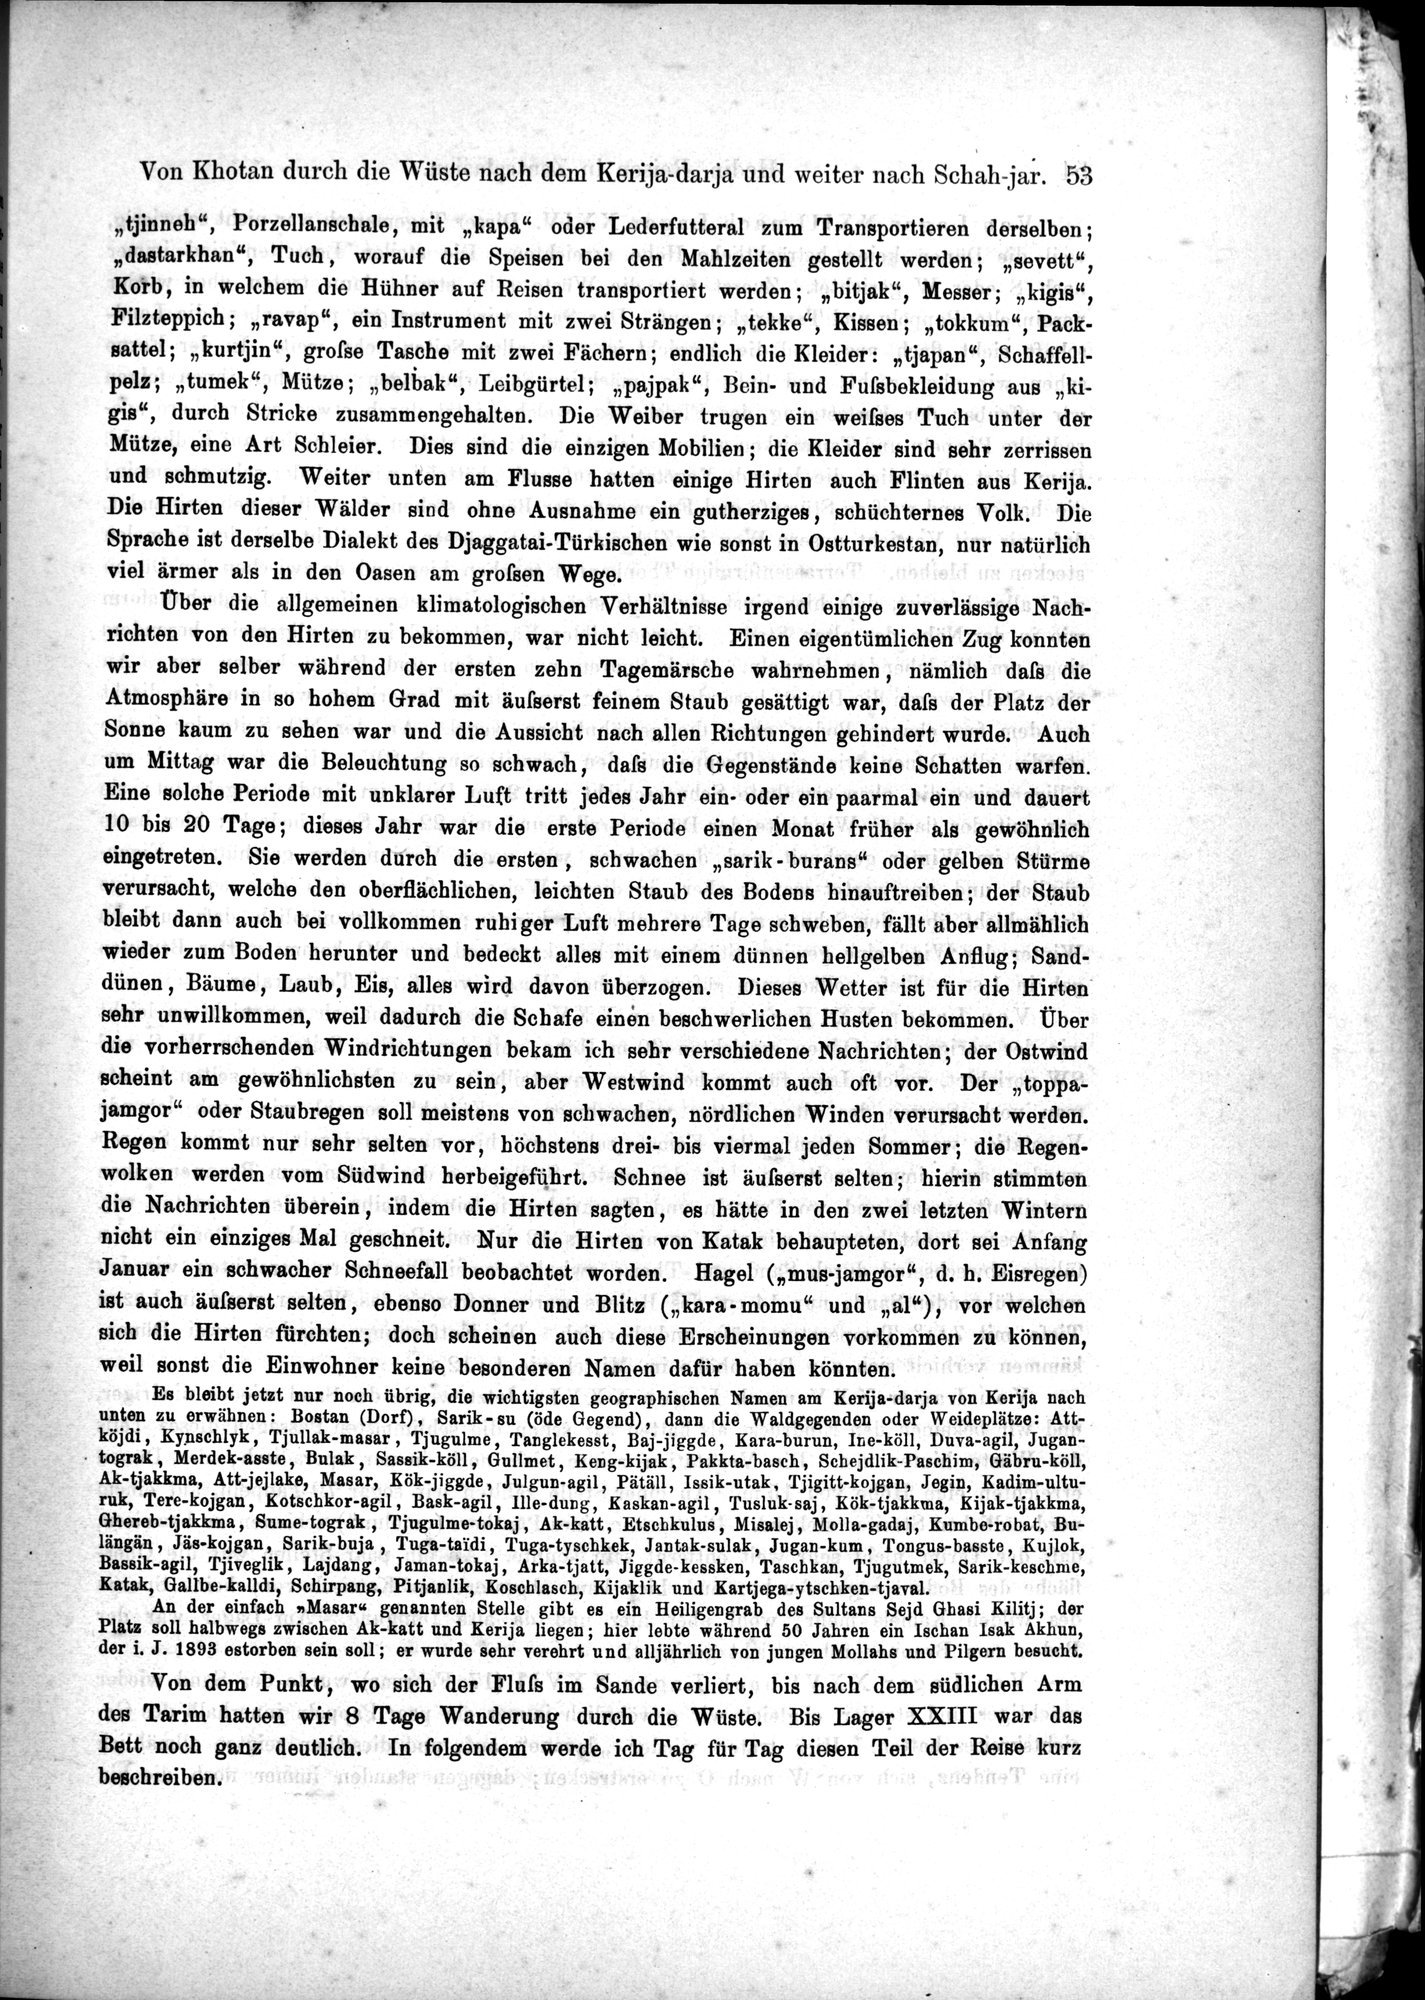 Die Geographische-Wissenschaftlichen Ergebnisse meiner Reisen in Zentralasien, 1894-1897 : vol.1 / Page 65 (Grayscale High Resolution Image)